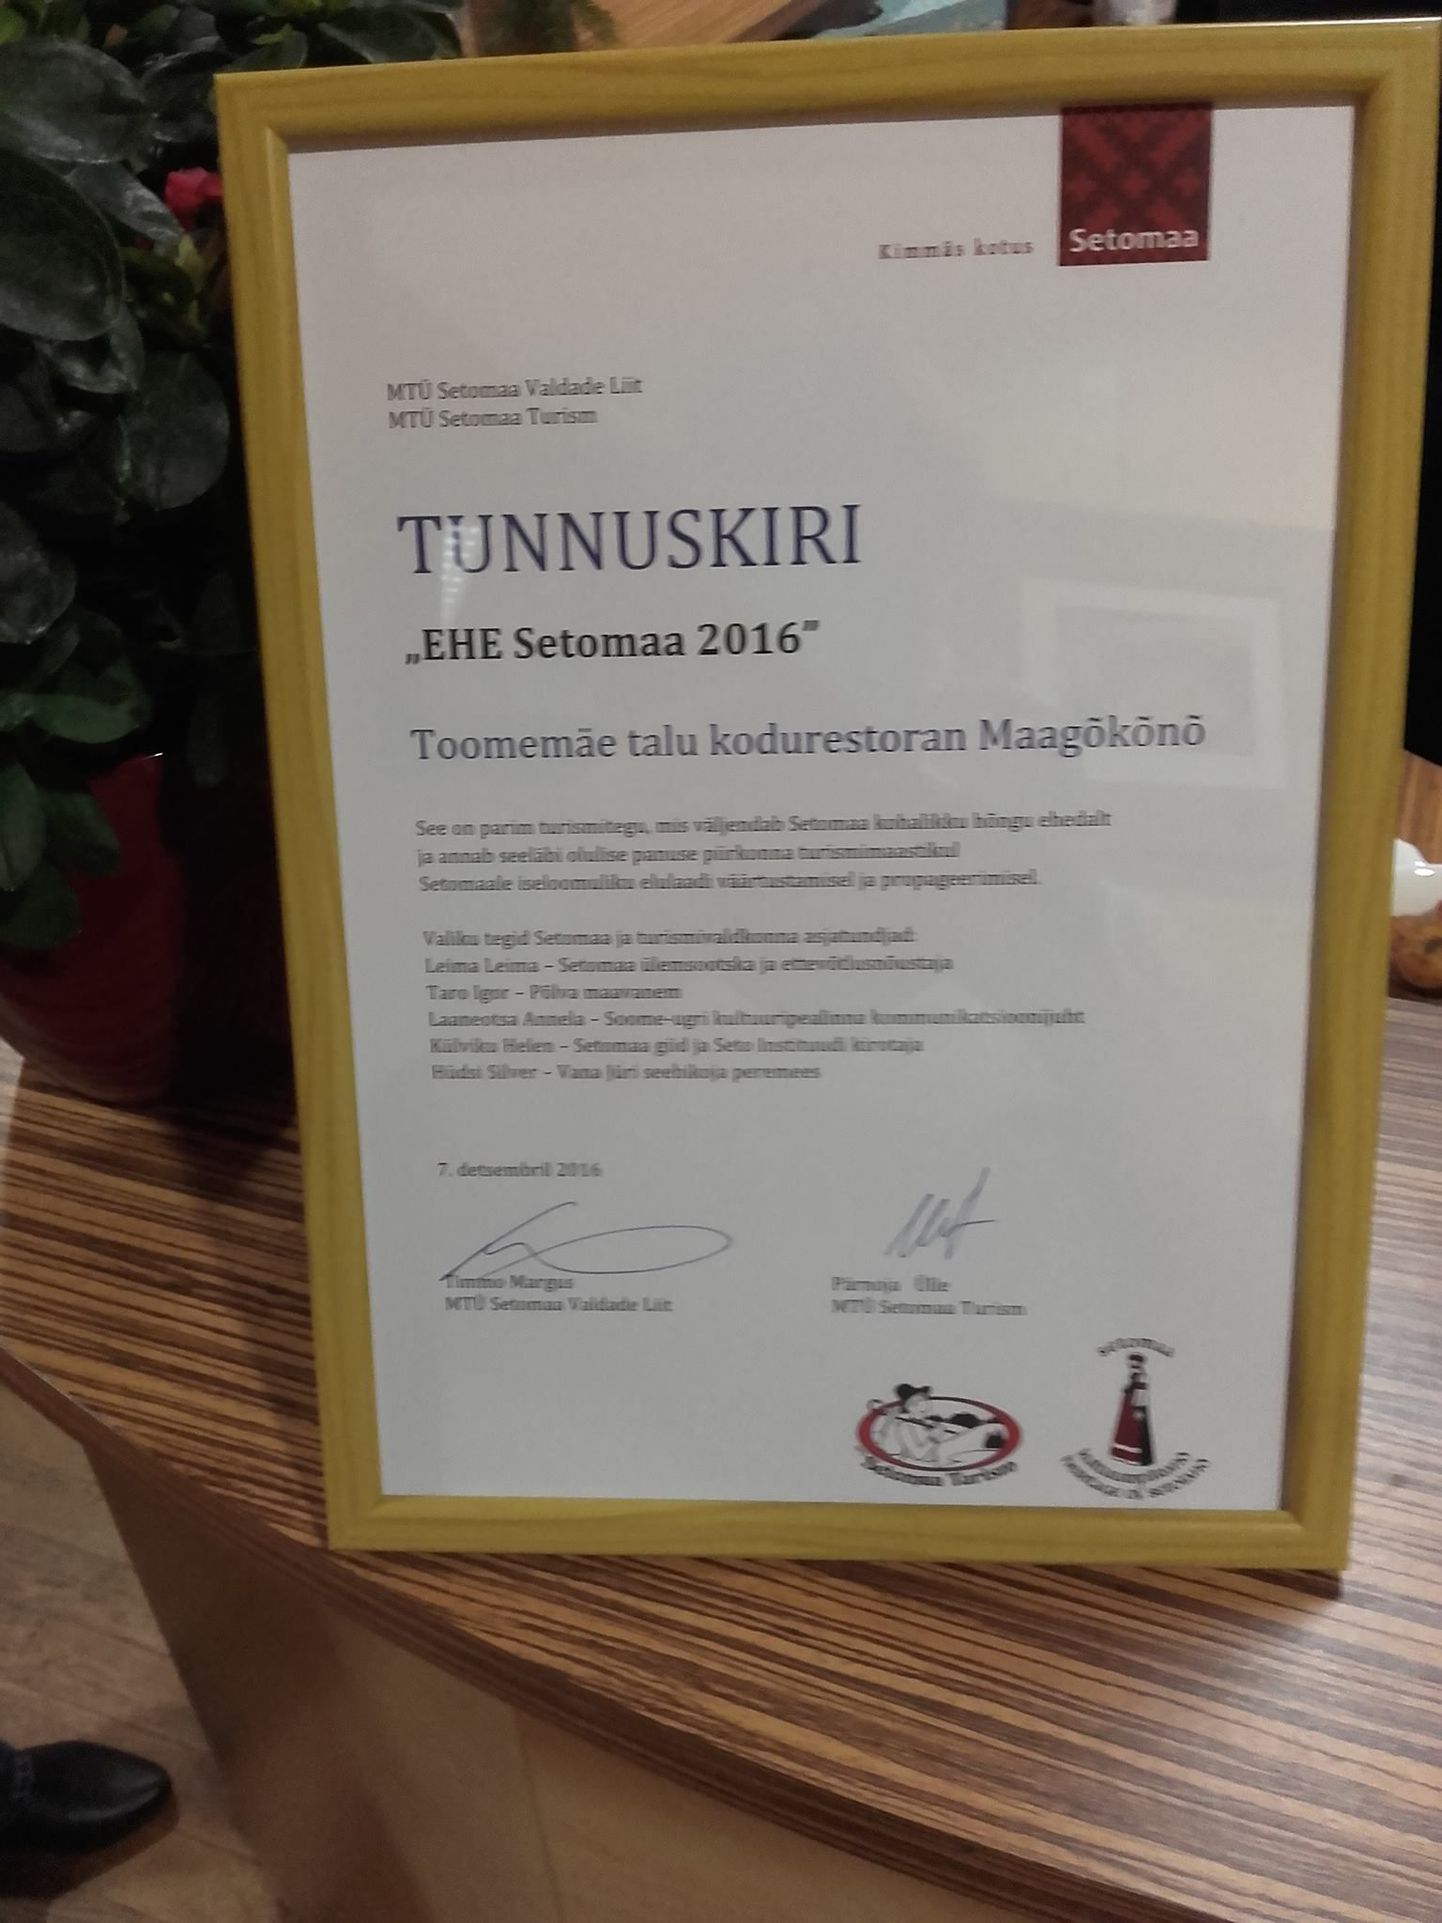 Toomemäe talu pälvis "EHE Setomaa 2016" tunnuskirja